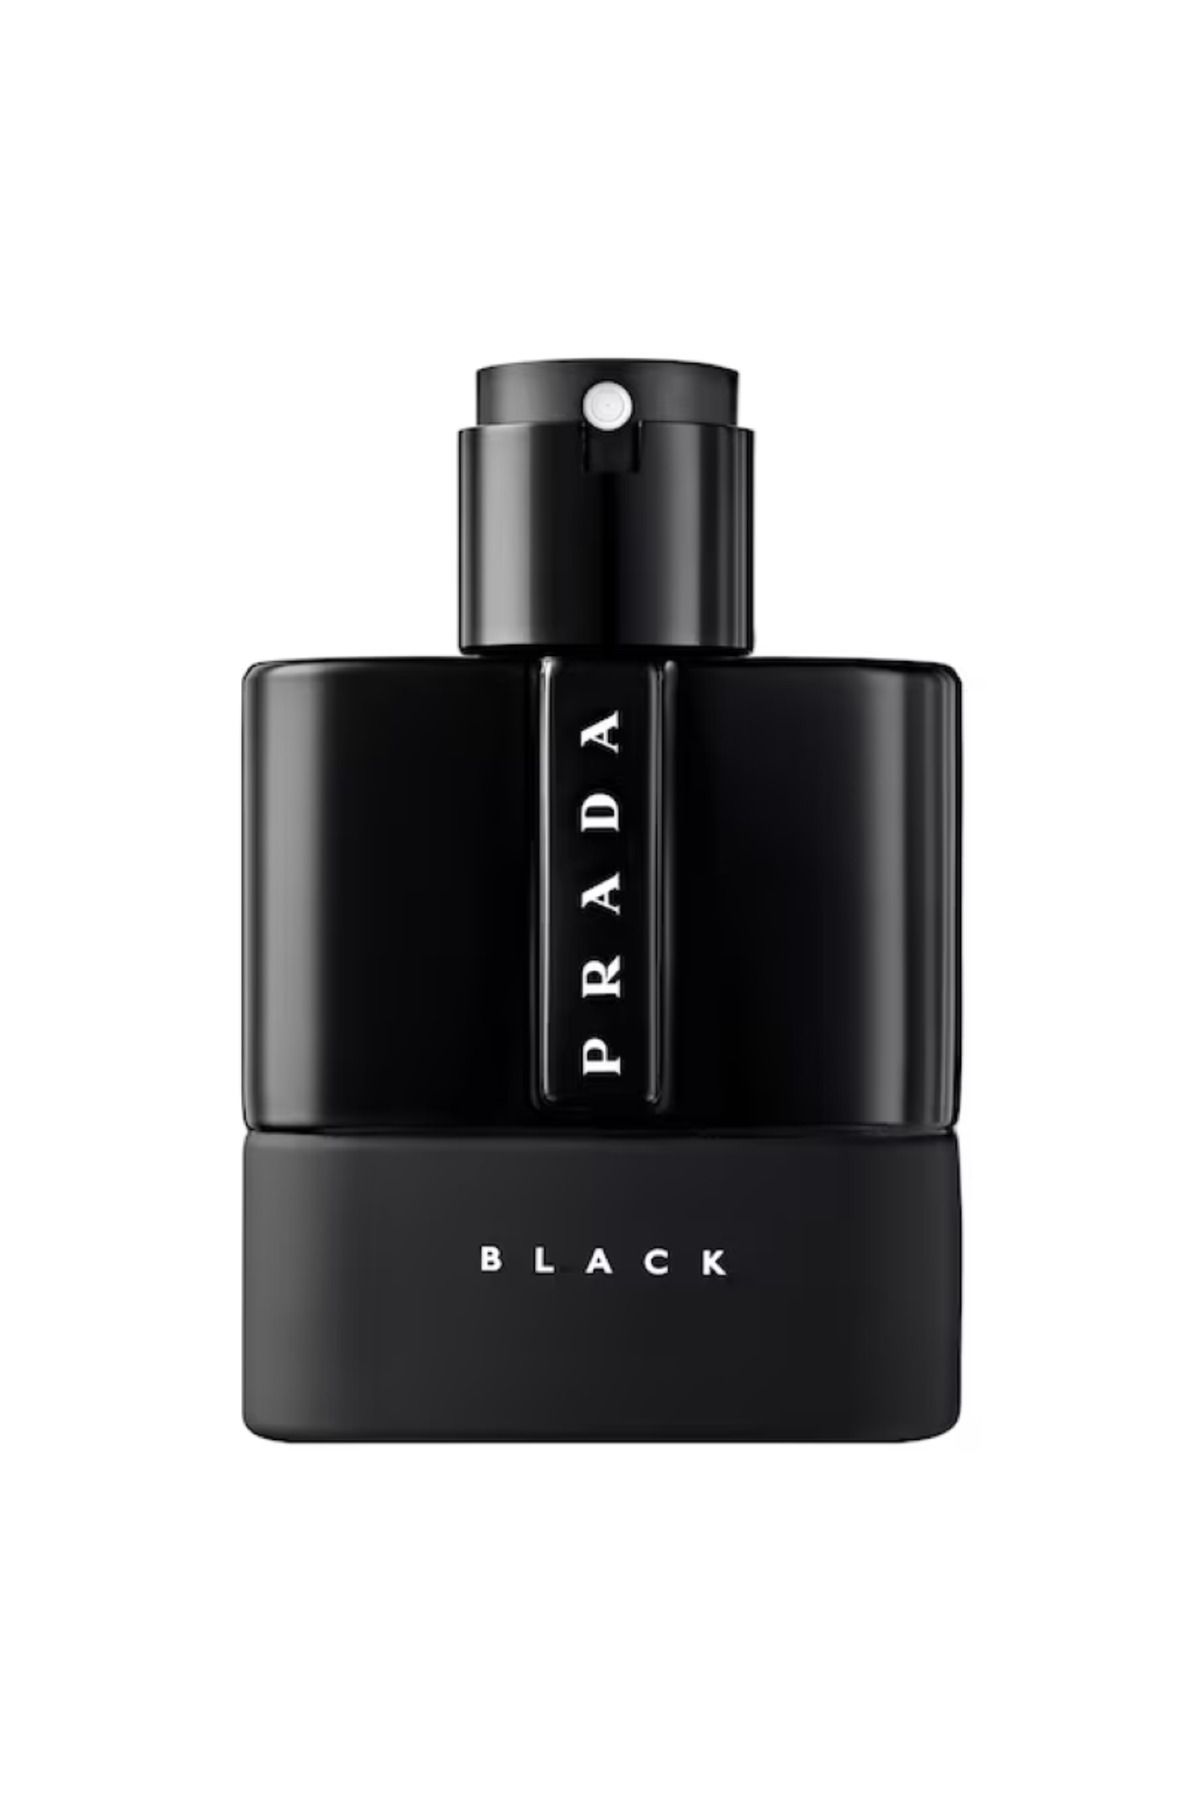 Prada Luna Rossa Black - Eau de Parfum Çok Yoğun Ve Karşı Konulamaz 50 ml